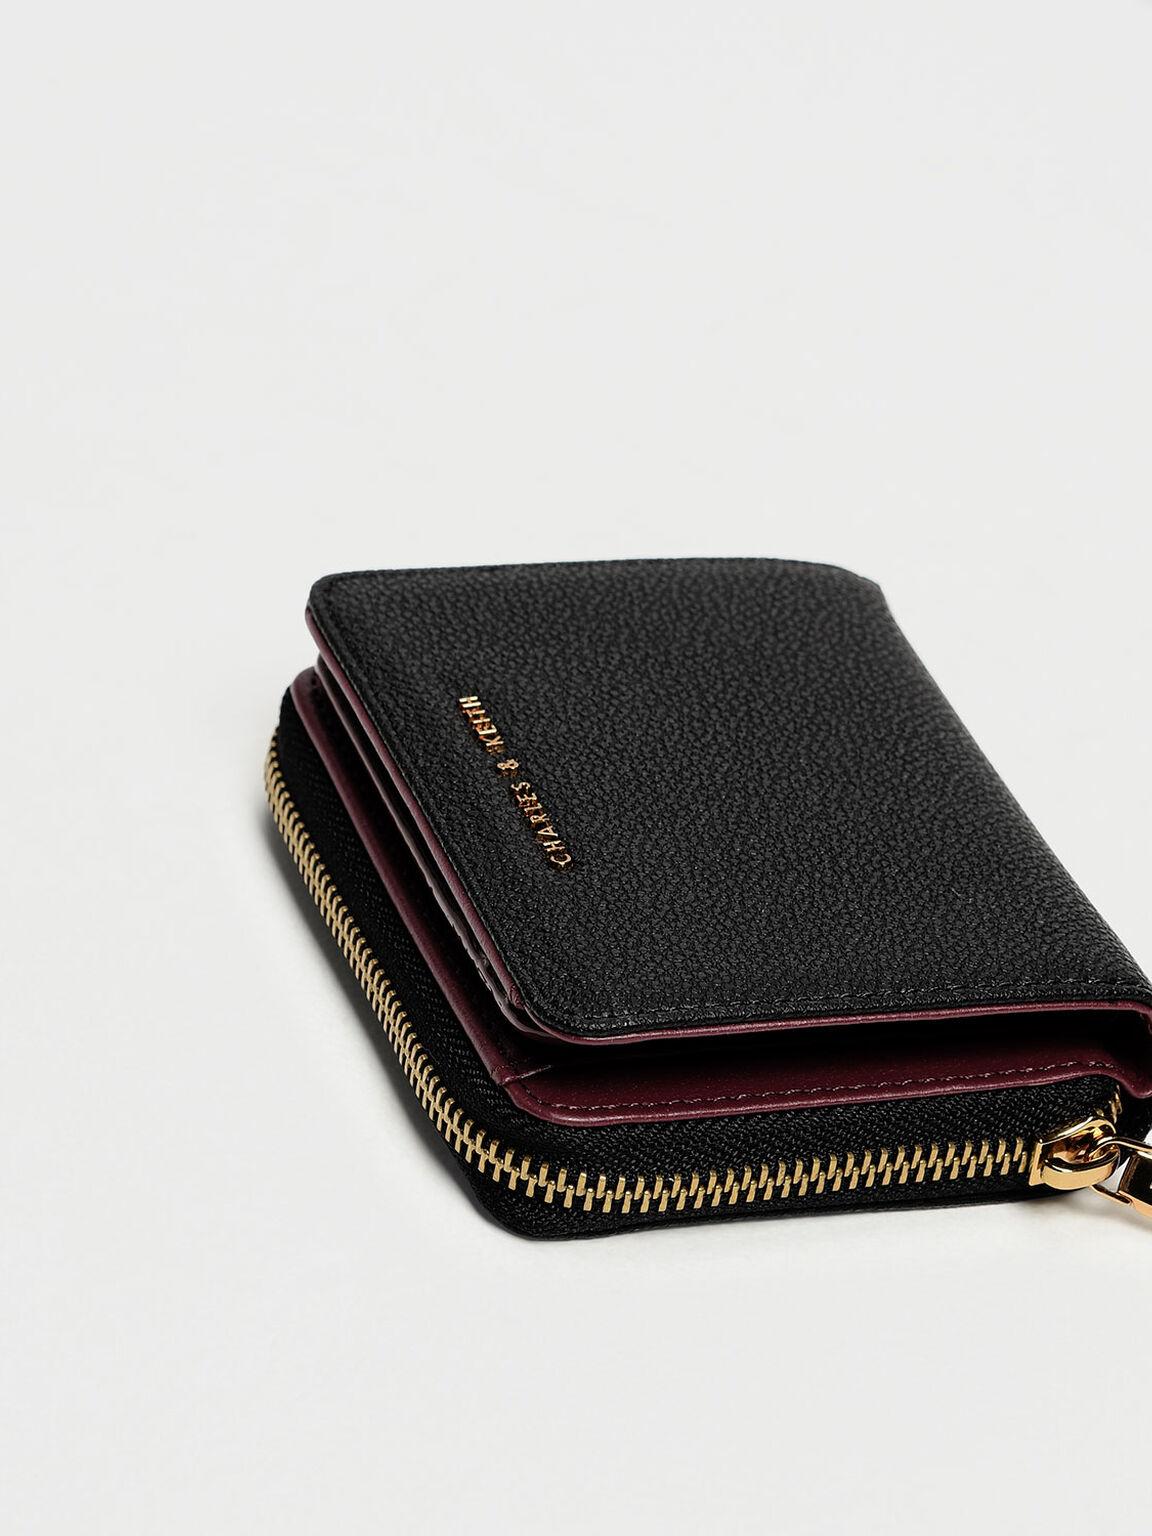 Classic Zip Mini Wallet, Black, hi-res